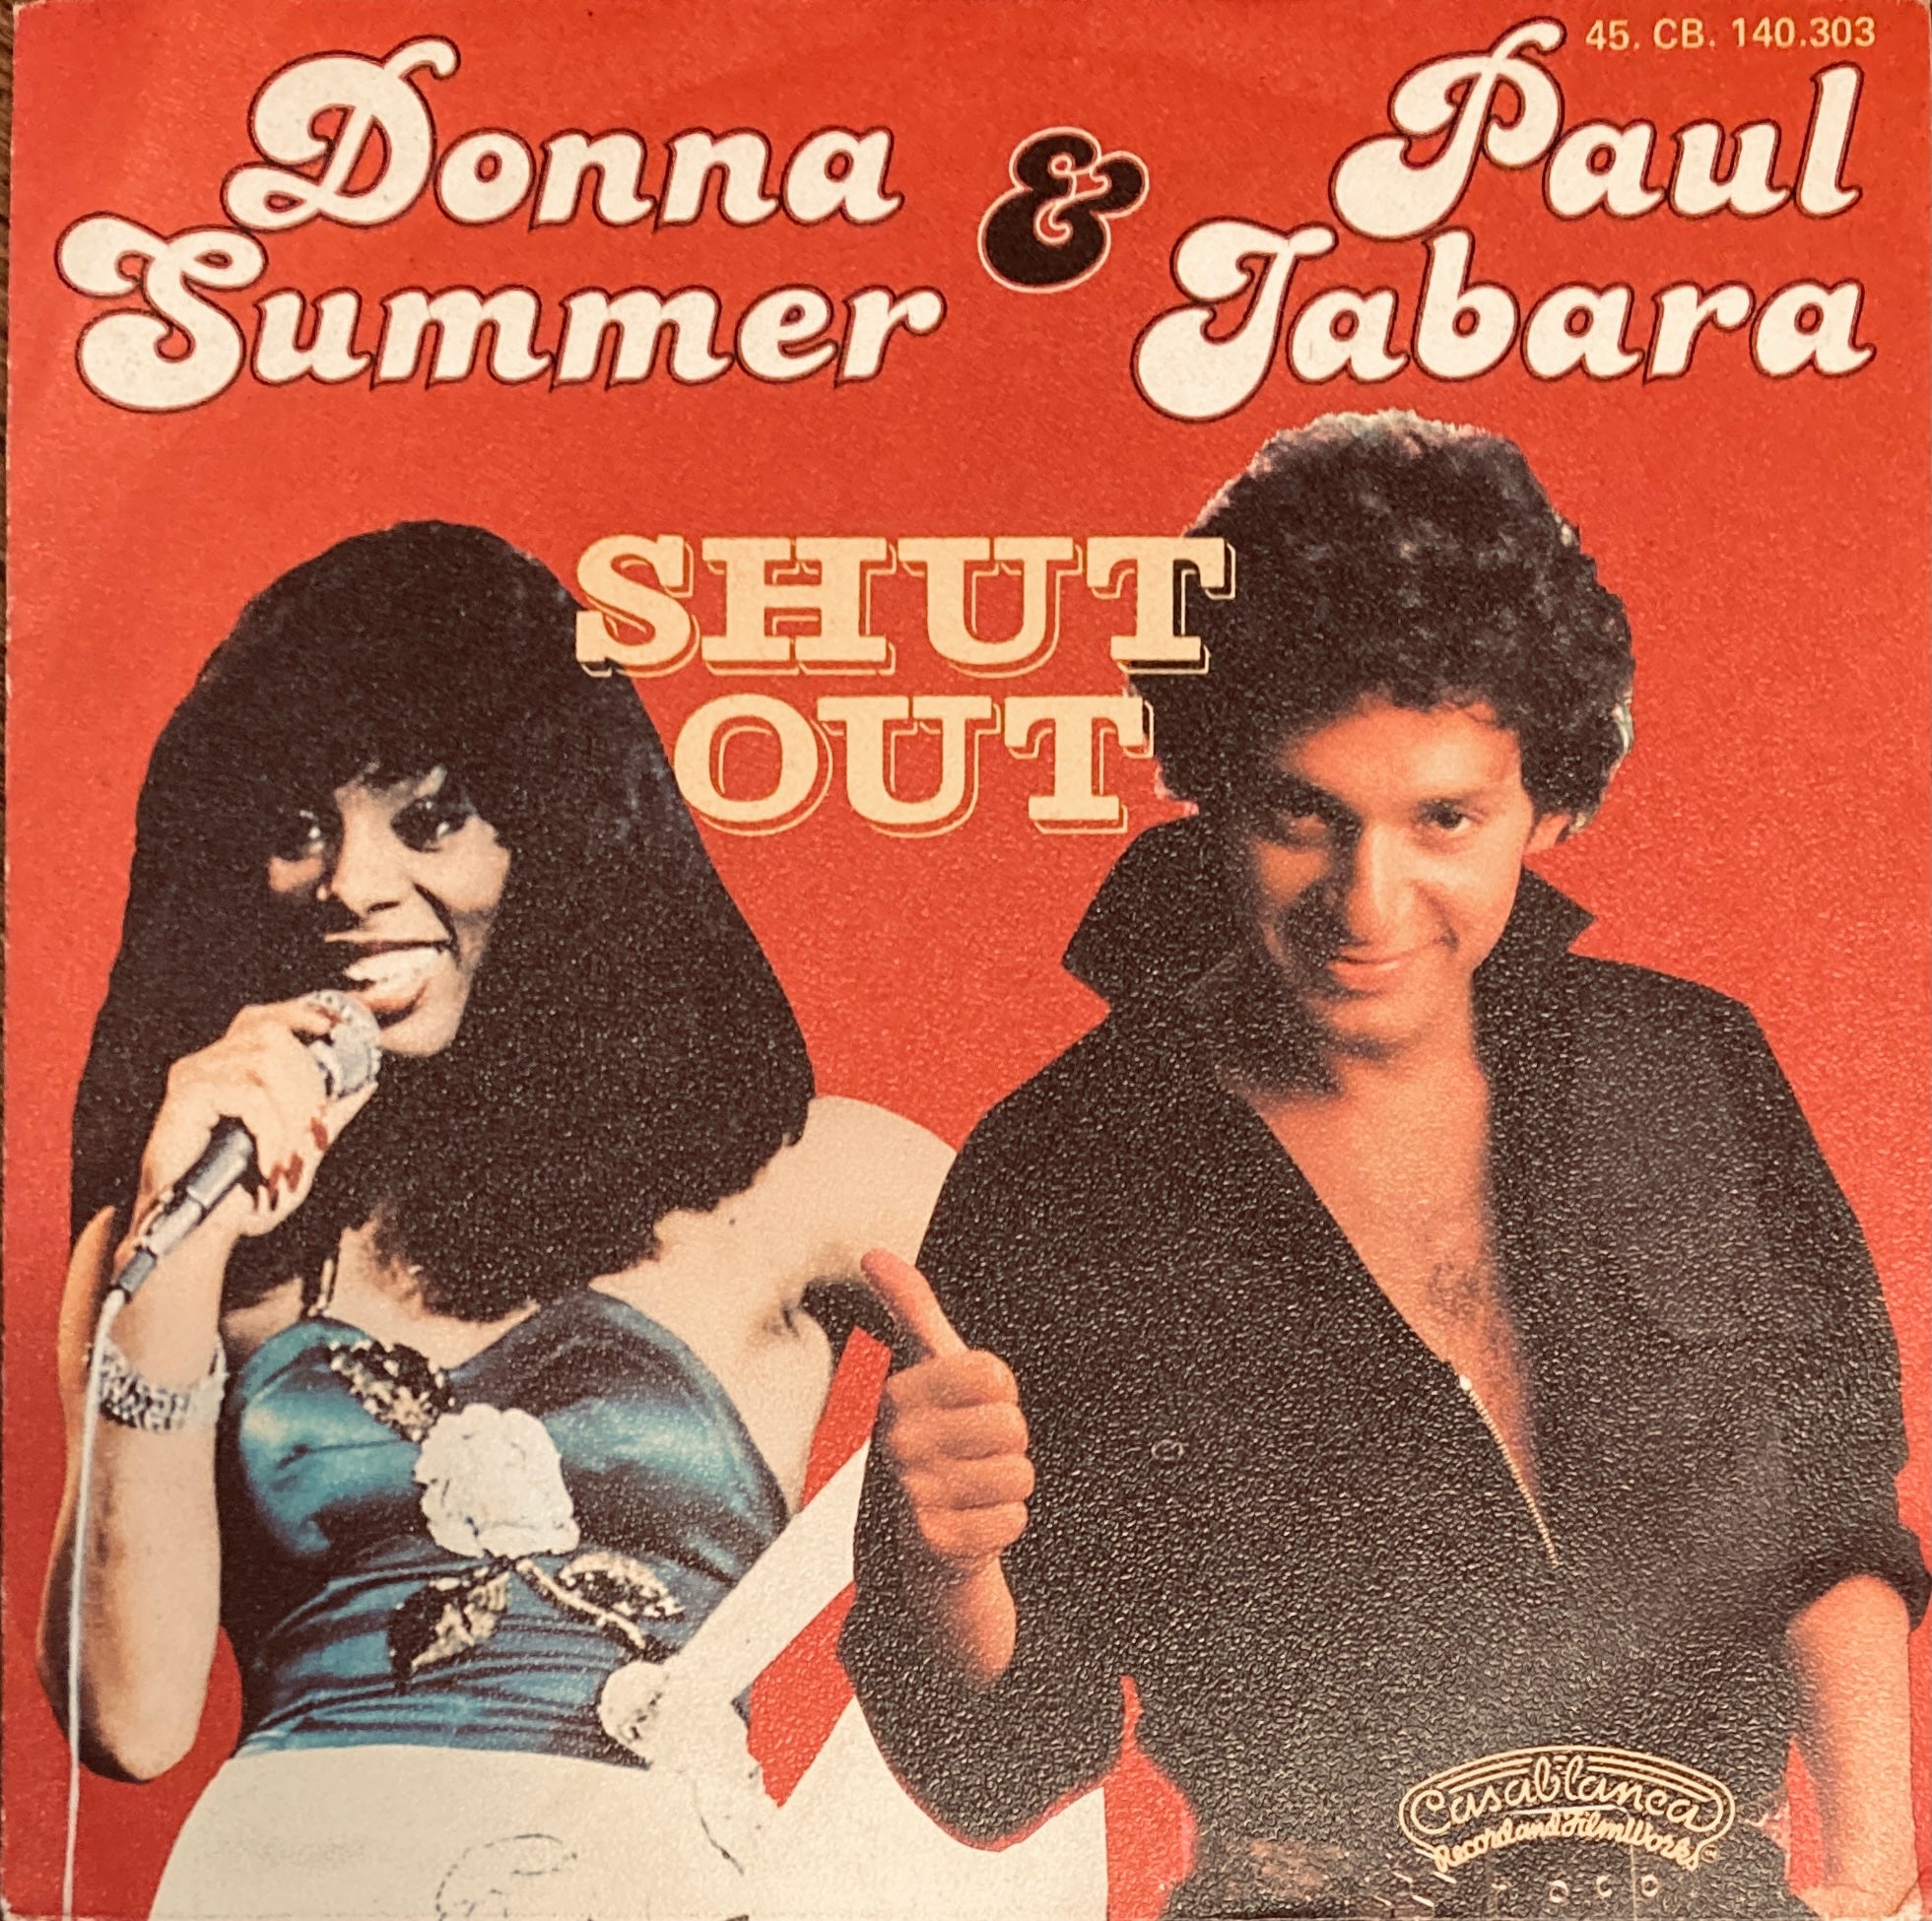 Donna Summer & Paul Jabara "Shut Out" Single (1977)